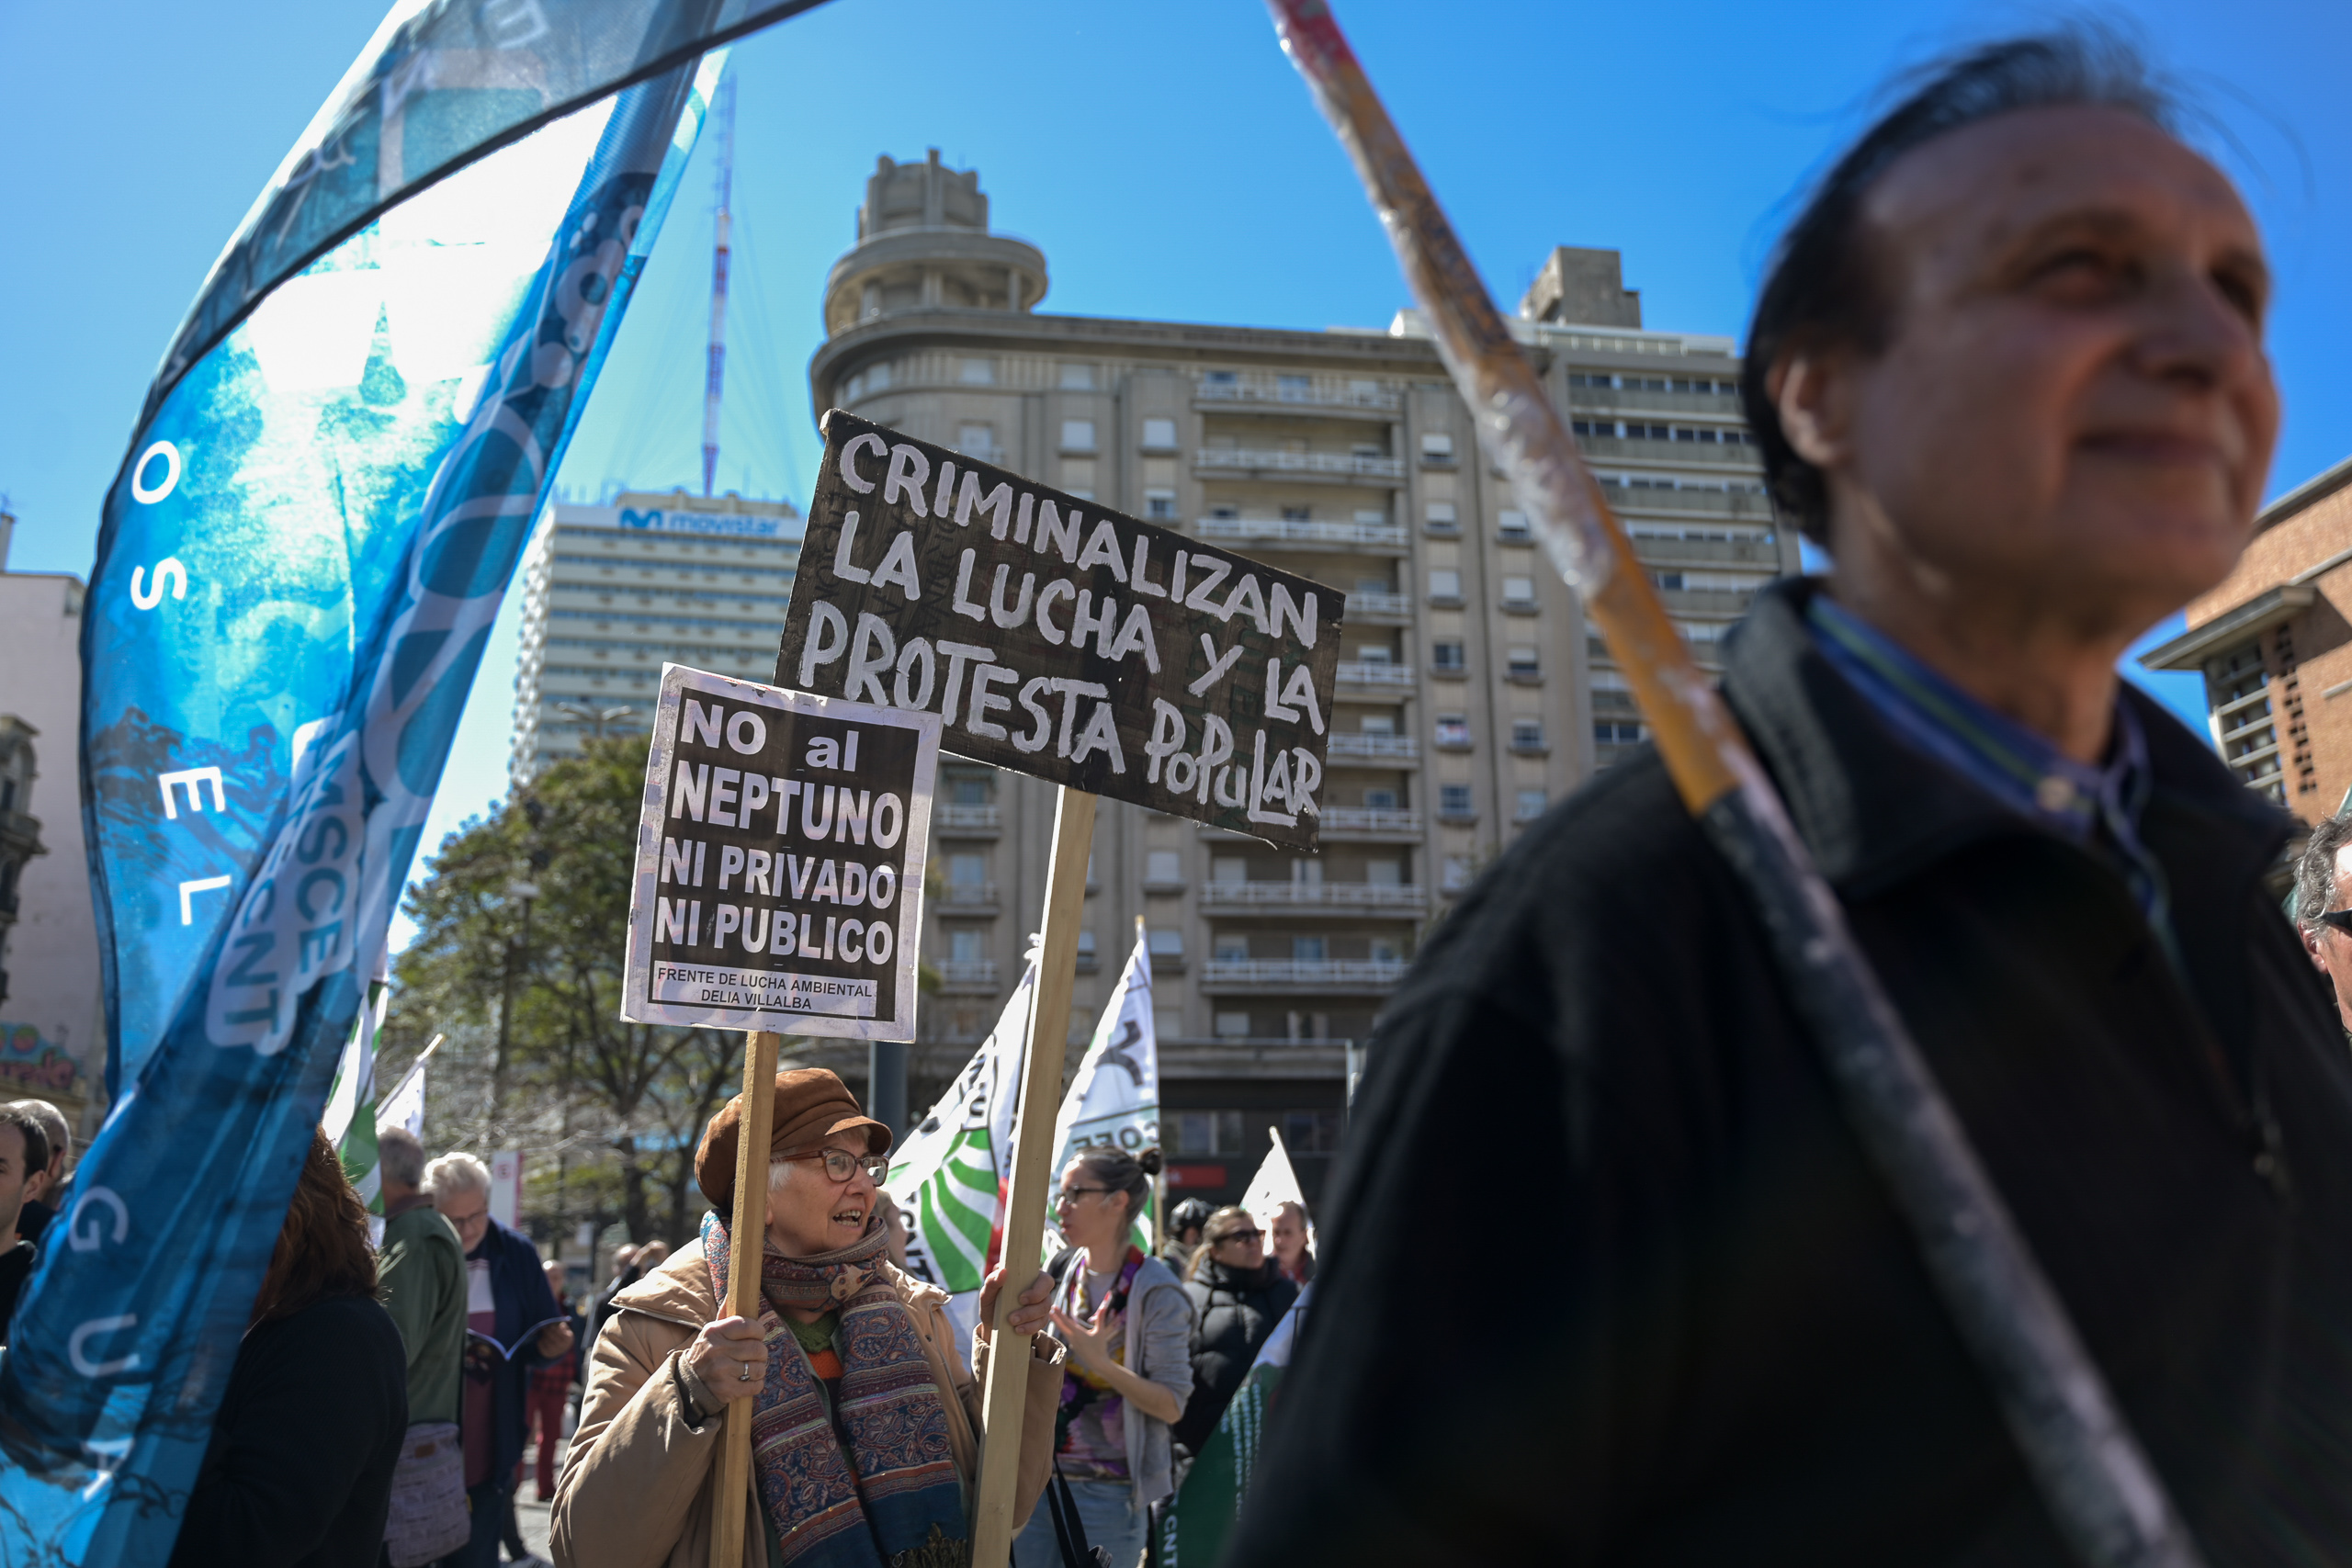 personas en una protesta con carteles que dicen "no al Neptuno ni público ni privado" y "Criminalizan la lucha y la protesta popular"